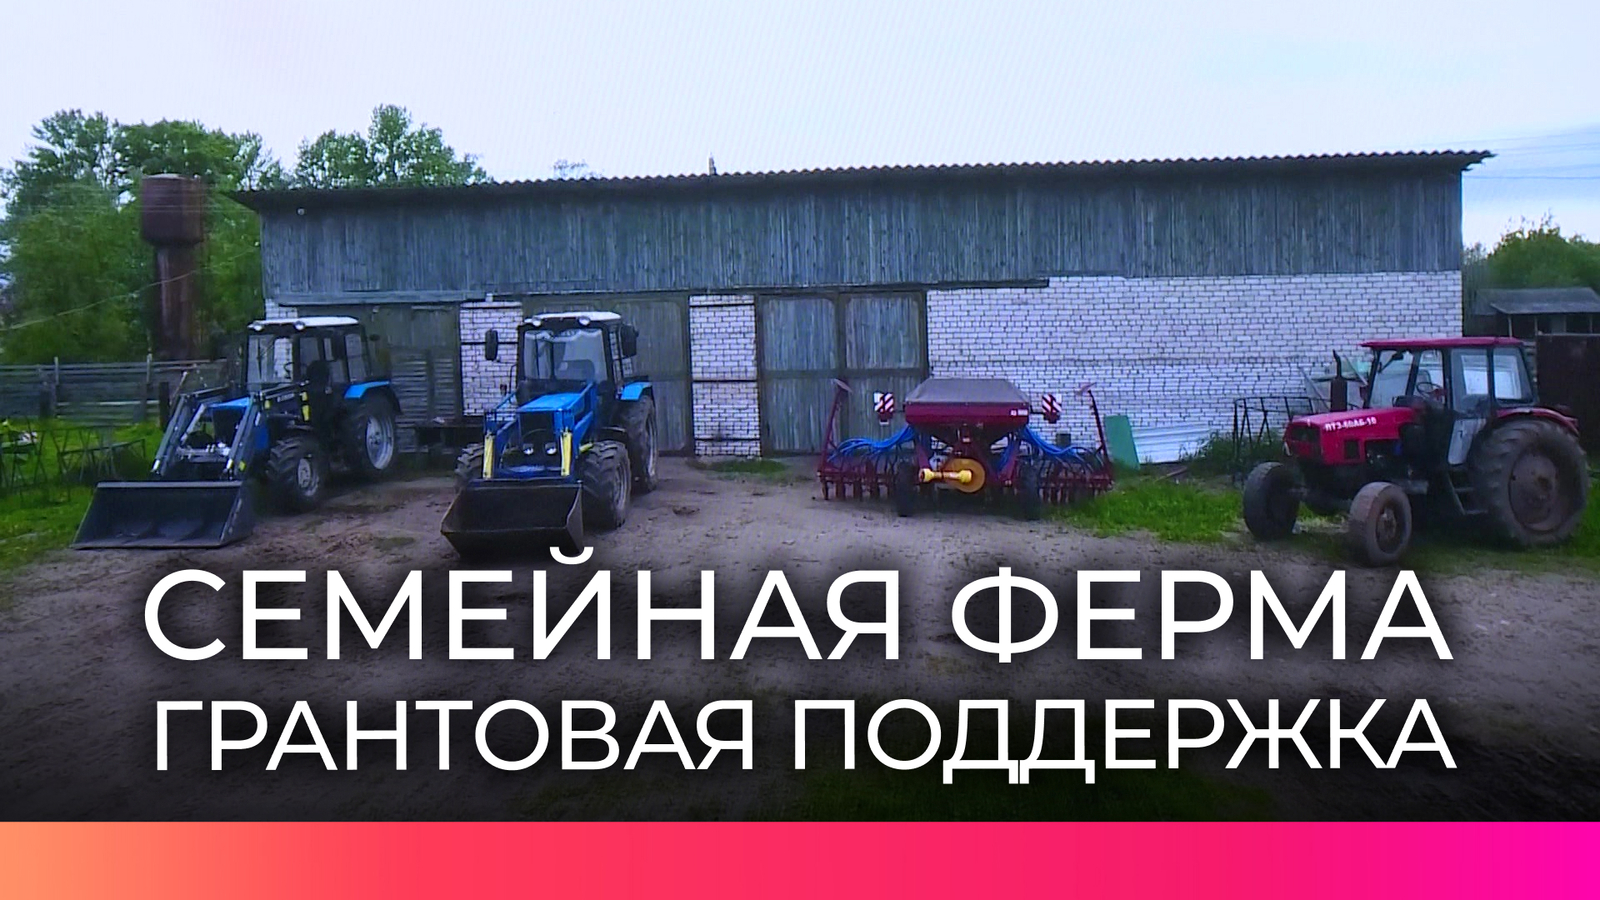 Обладателями грантов стали 14 семейных ферм Башкортостана